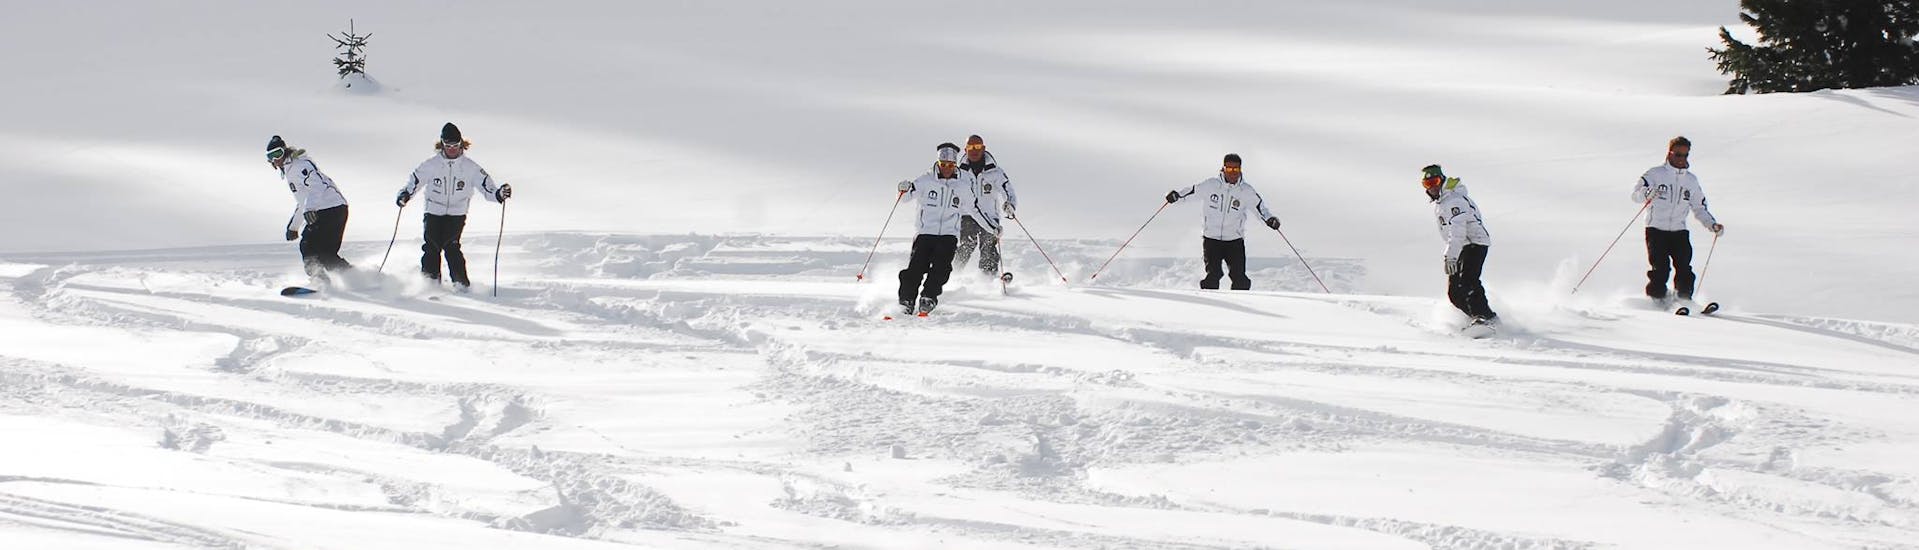 Clases de esquí privadas para adultos a partir de 4 años para todos los niveles.